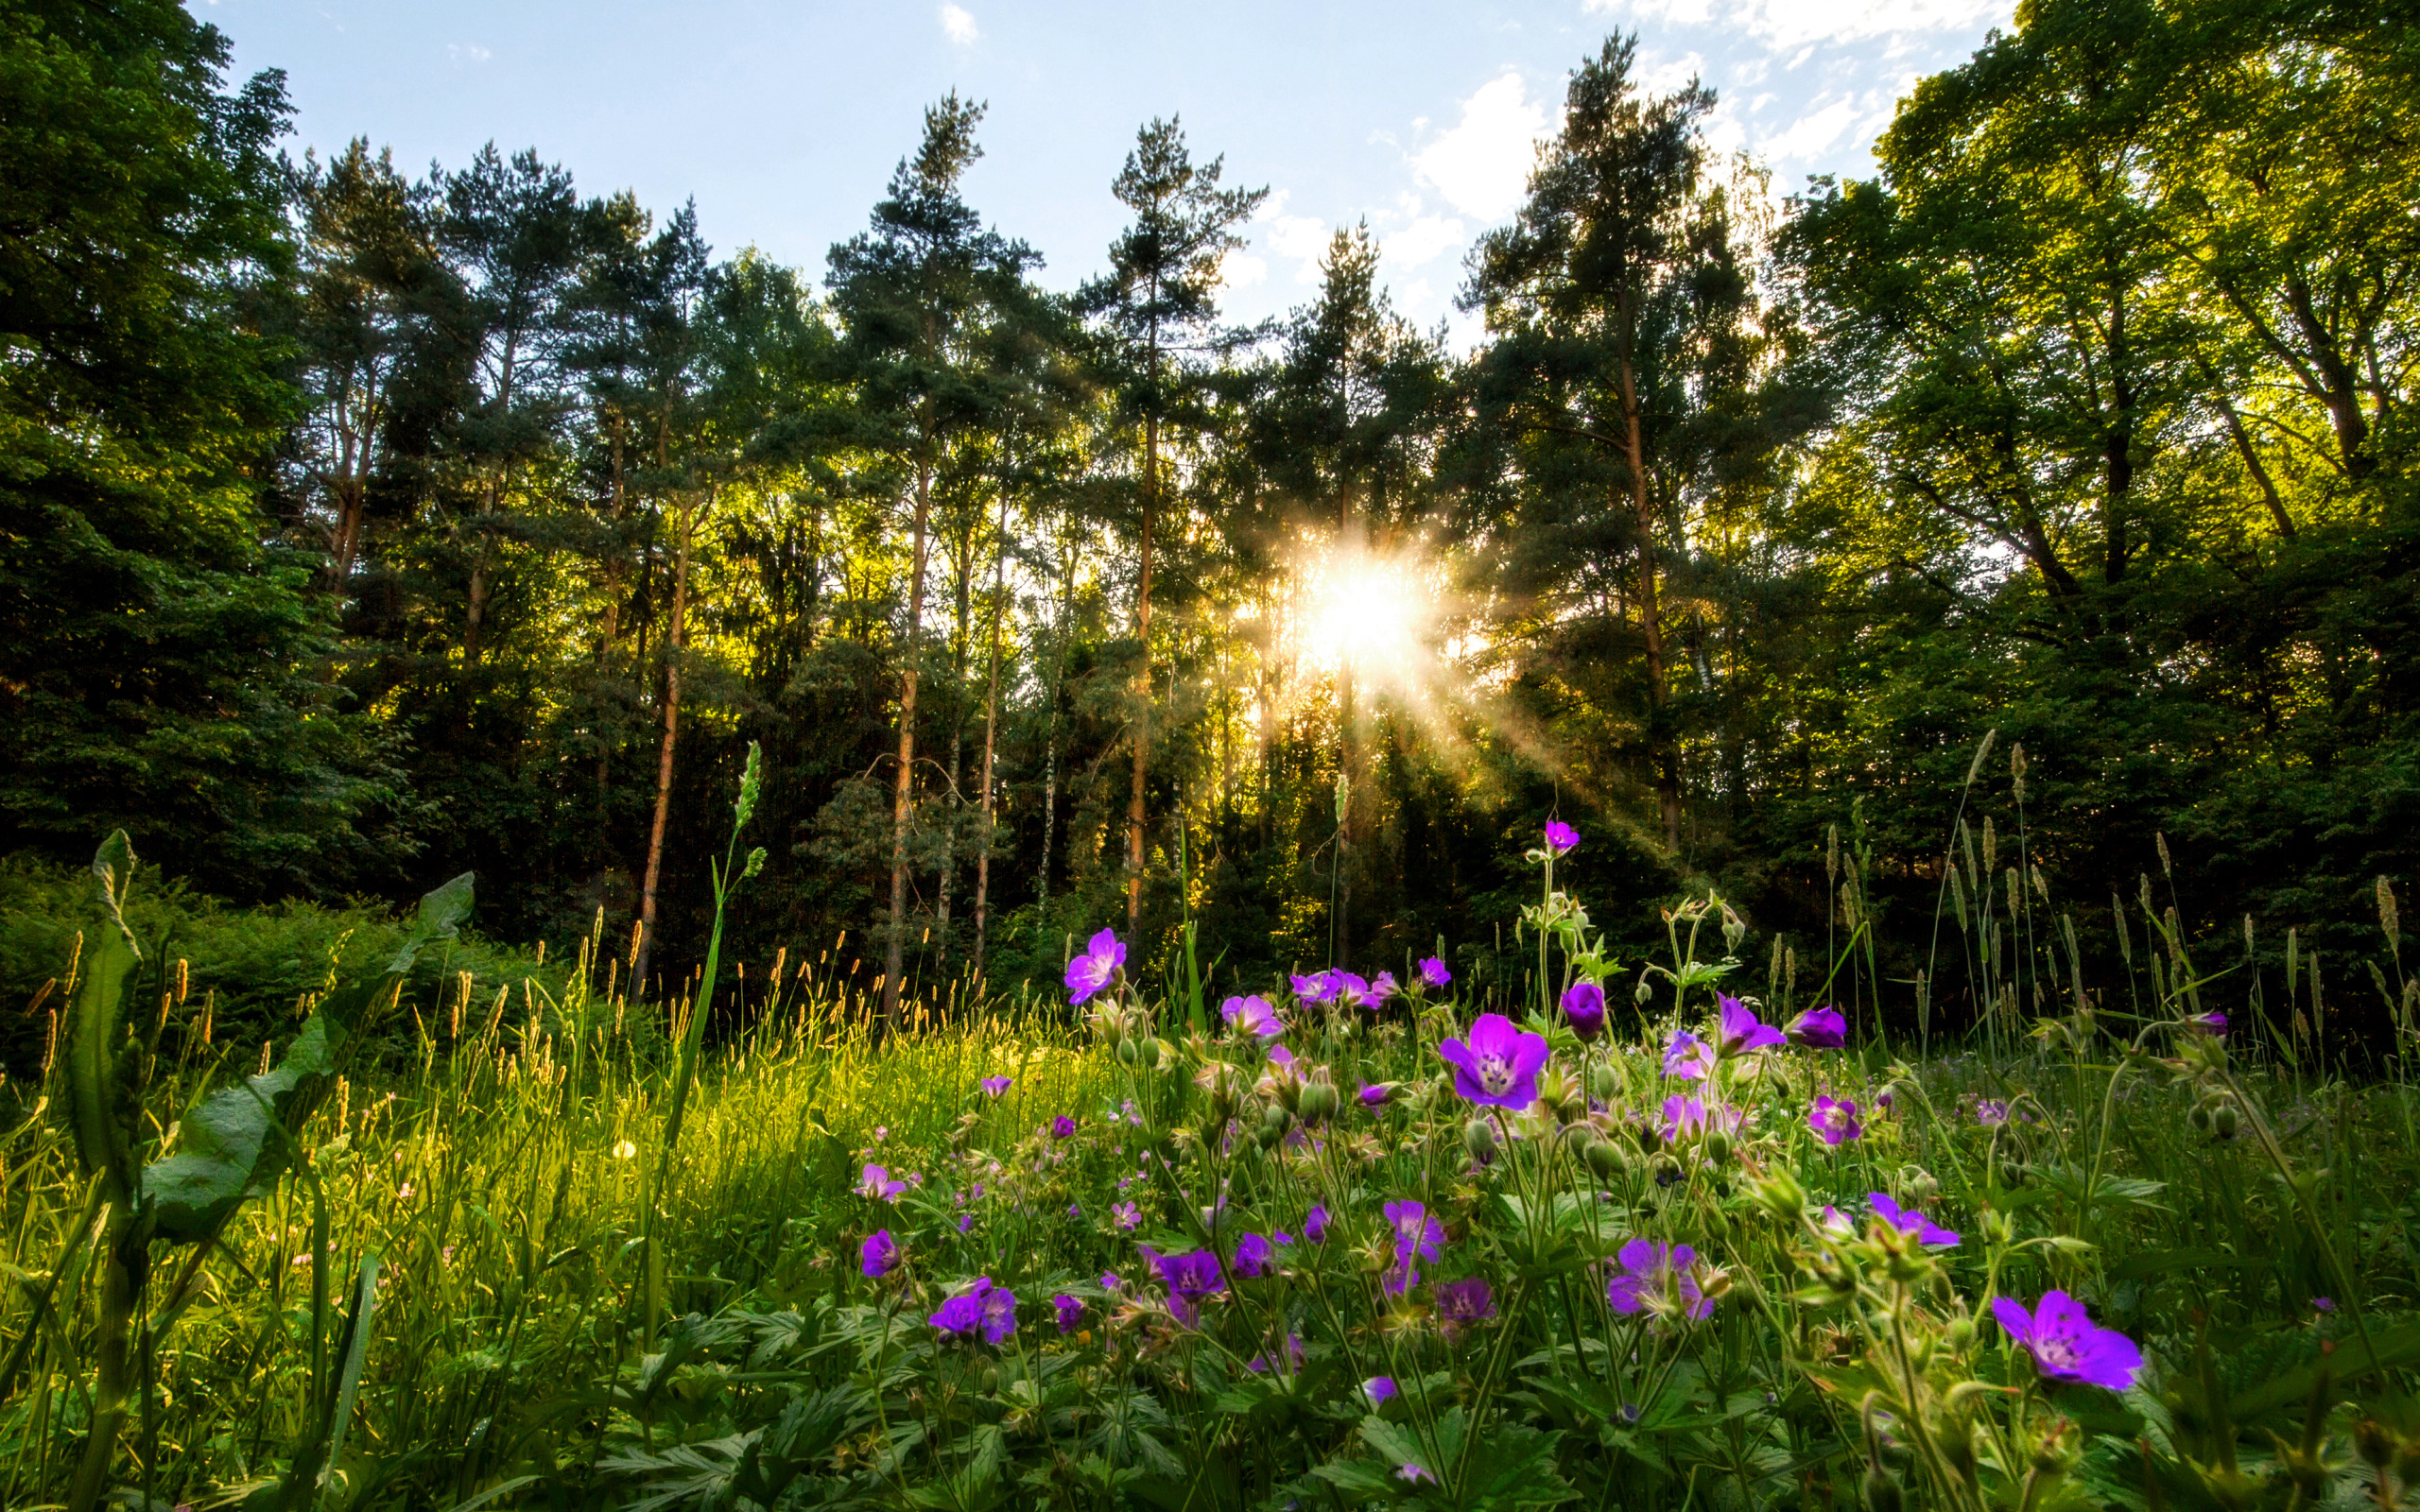 Звуки природы днем. Природа Южного Урала Солнечная Поляна. Поляна в лесу. Лето в лесу. Лесная Поляна с цветами.